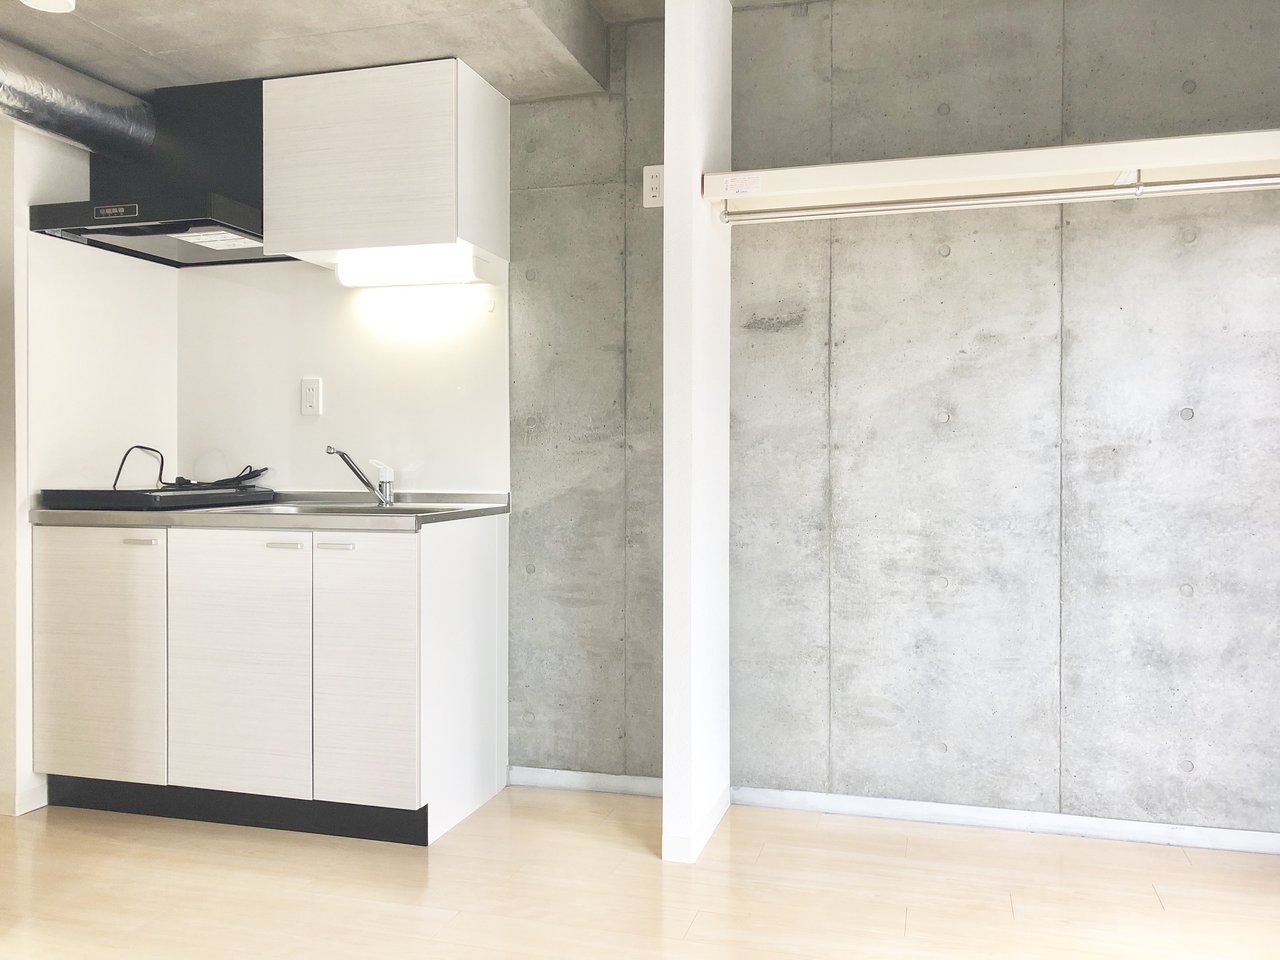 白・黒・グレーのシンプルカラーで統一されたキッチンと居室。キッチンには収納スペースもあり、IHコンロが2口ついていますよ。